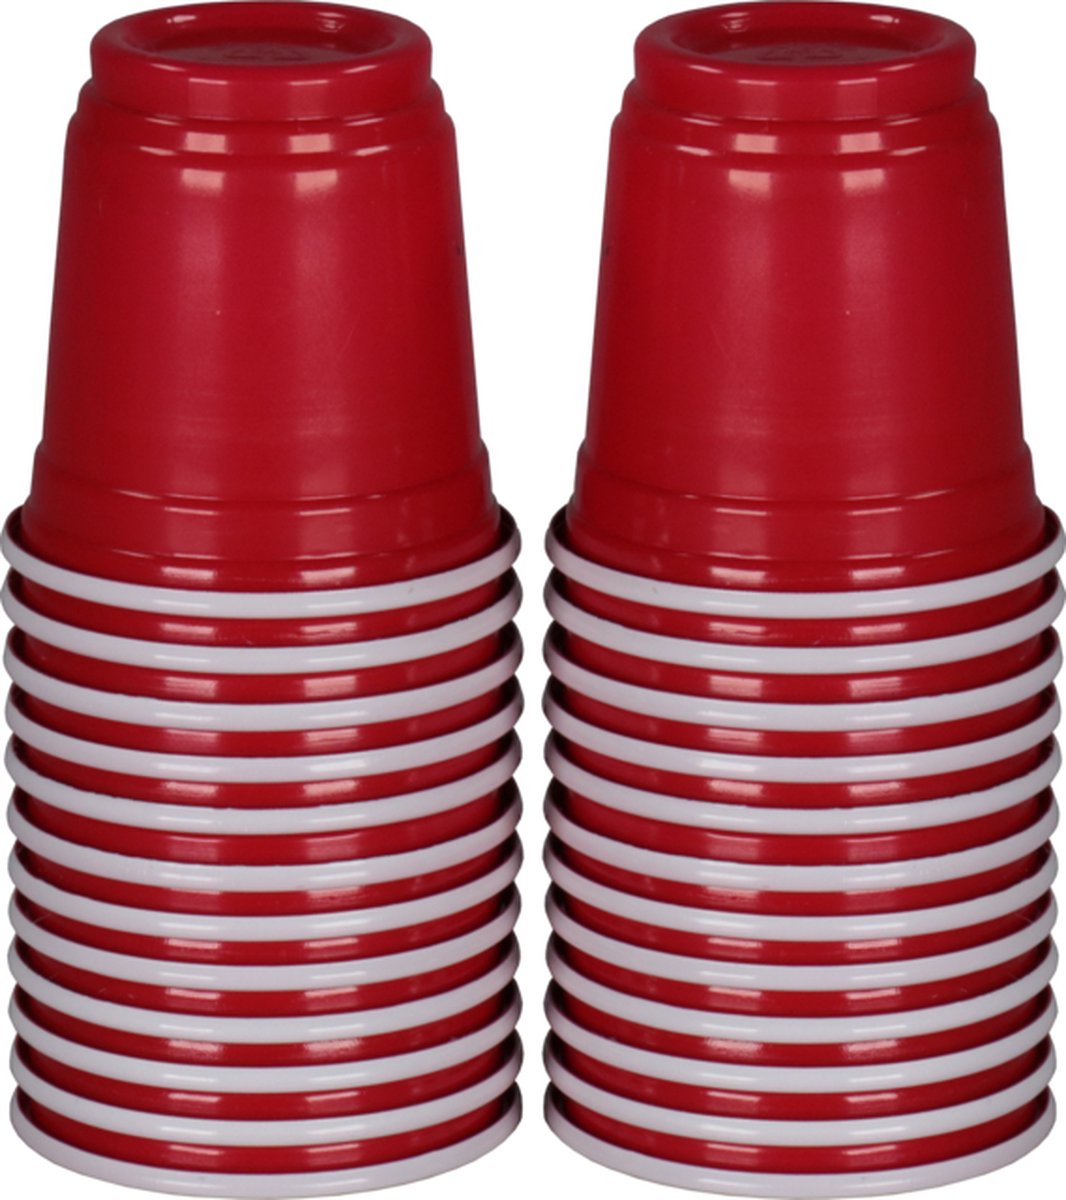 Red cup shotglas, PP, reusable, 60ml, 2oz, rood (48 stuks)